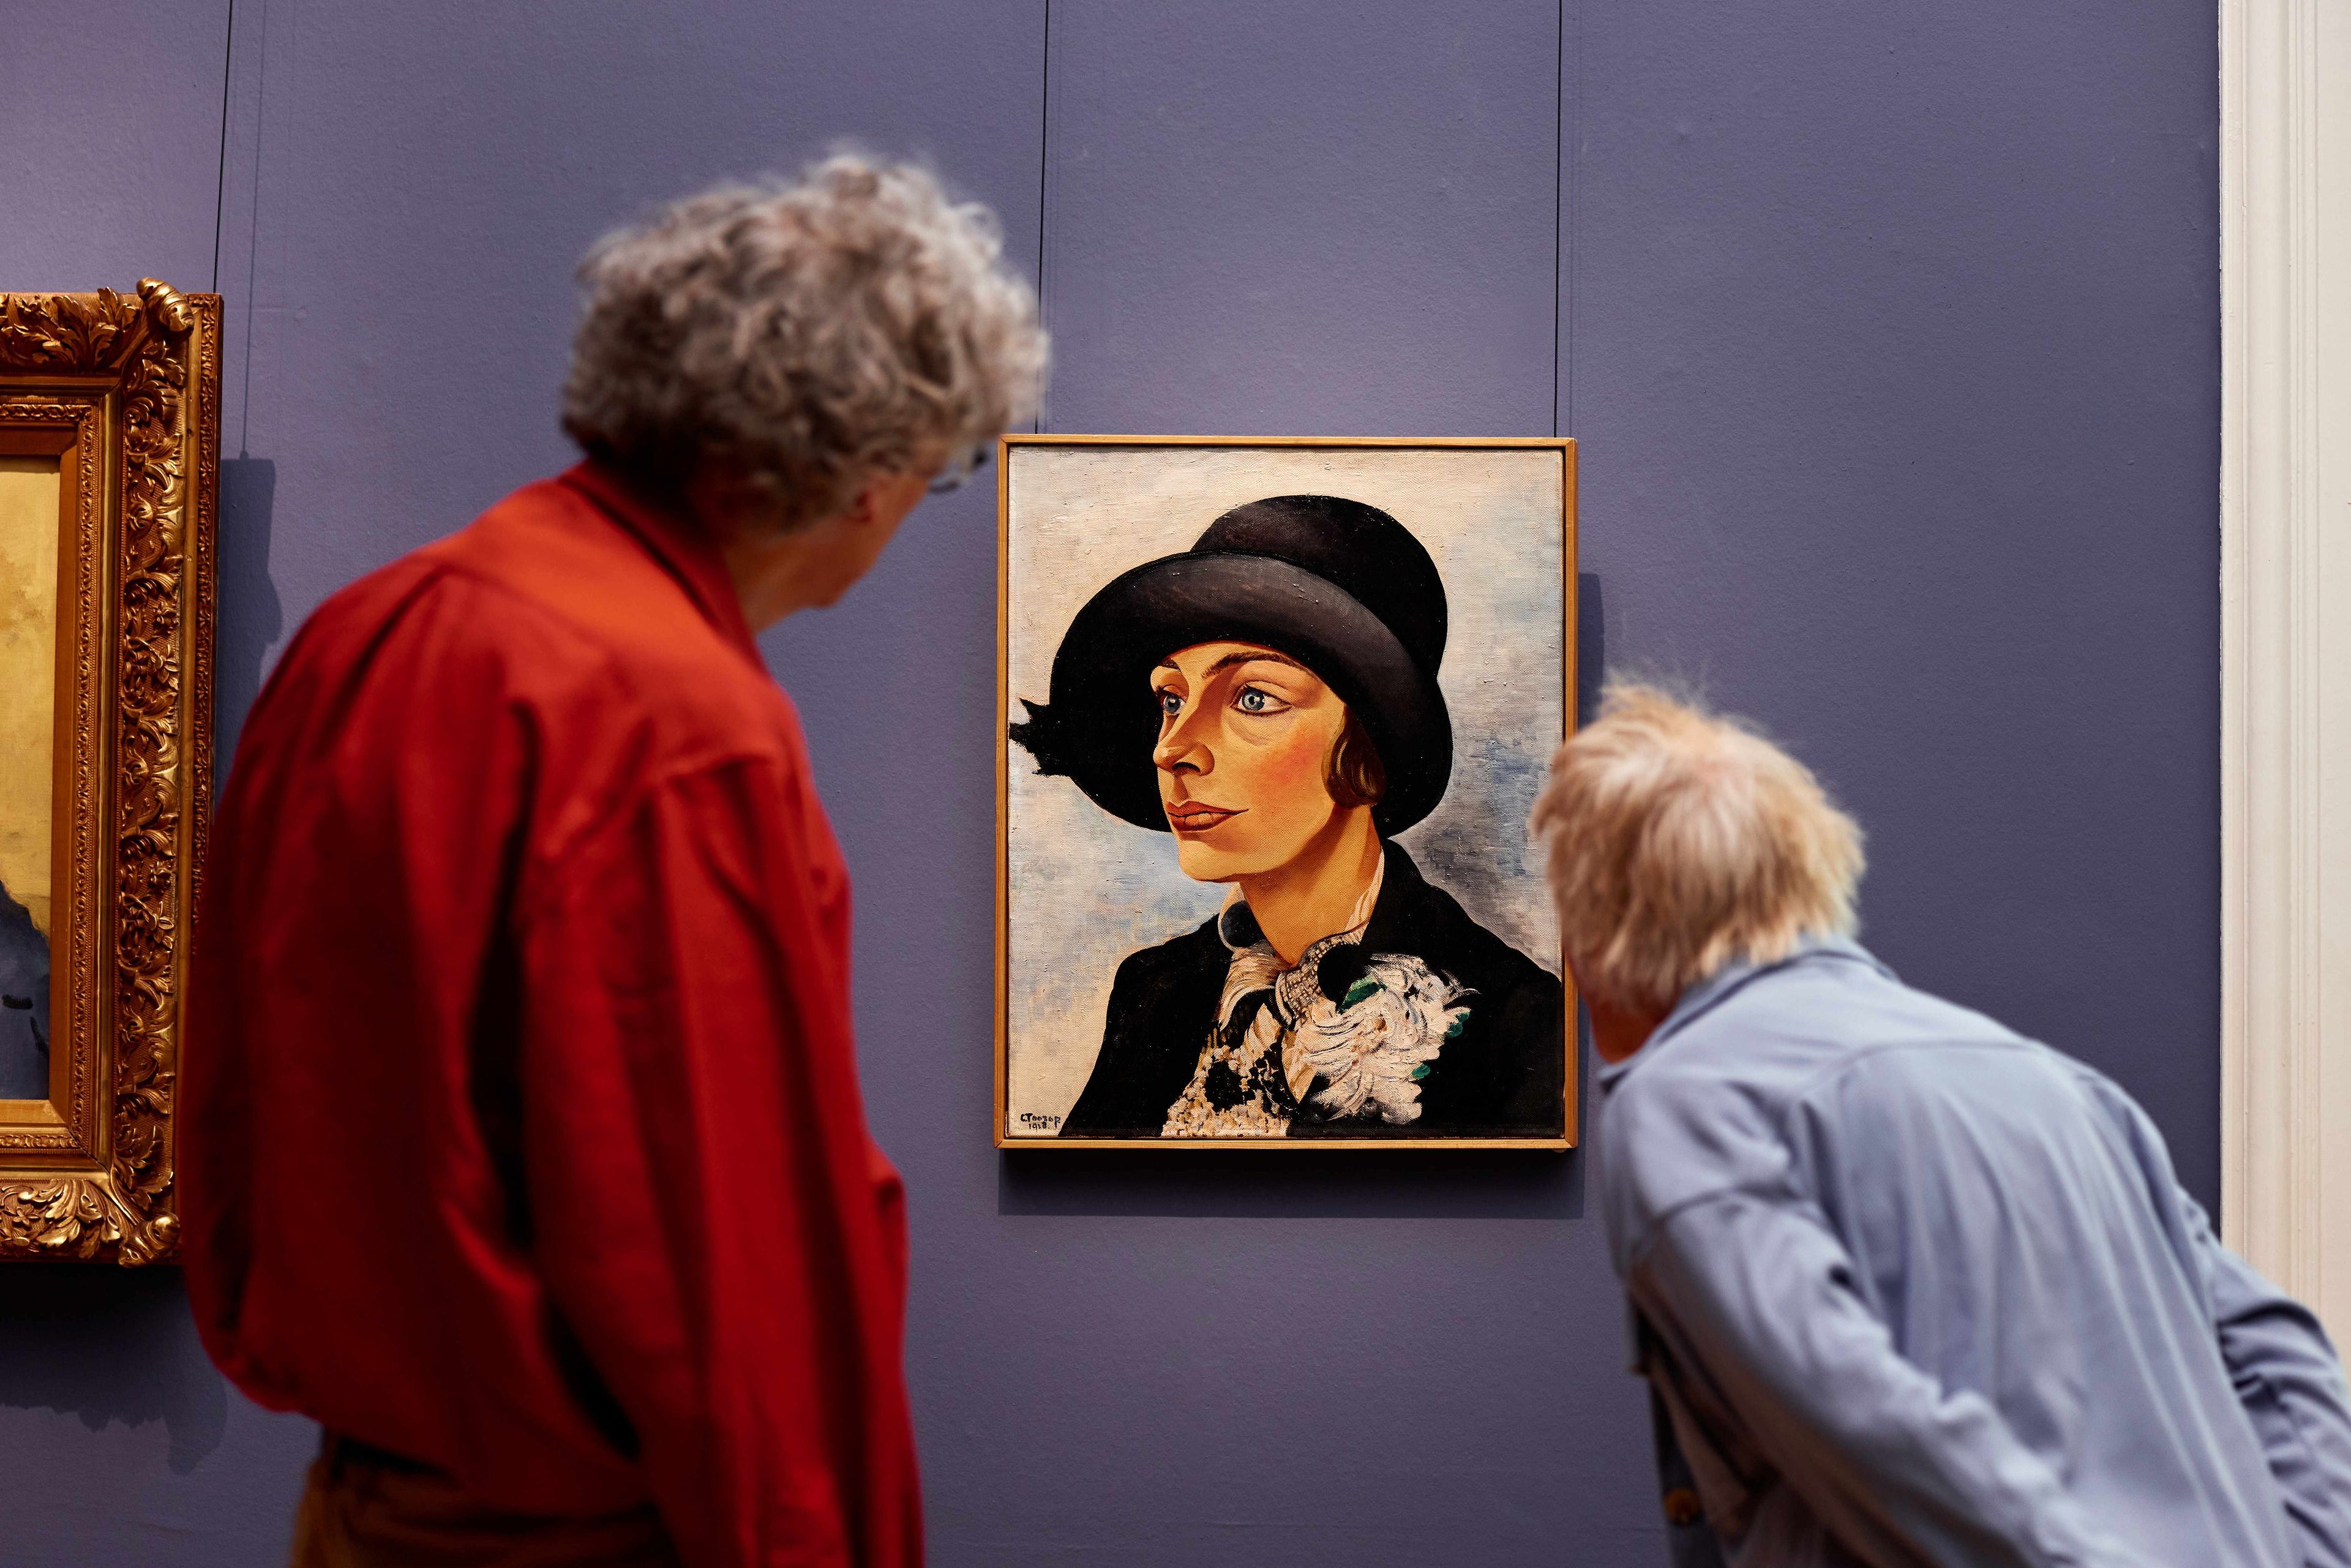 Twee bezoekers kijken naar het kunstwerk 'Dame met zwarte hoed' van Charley Toorop in het Frans Hals Museum.